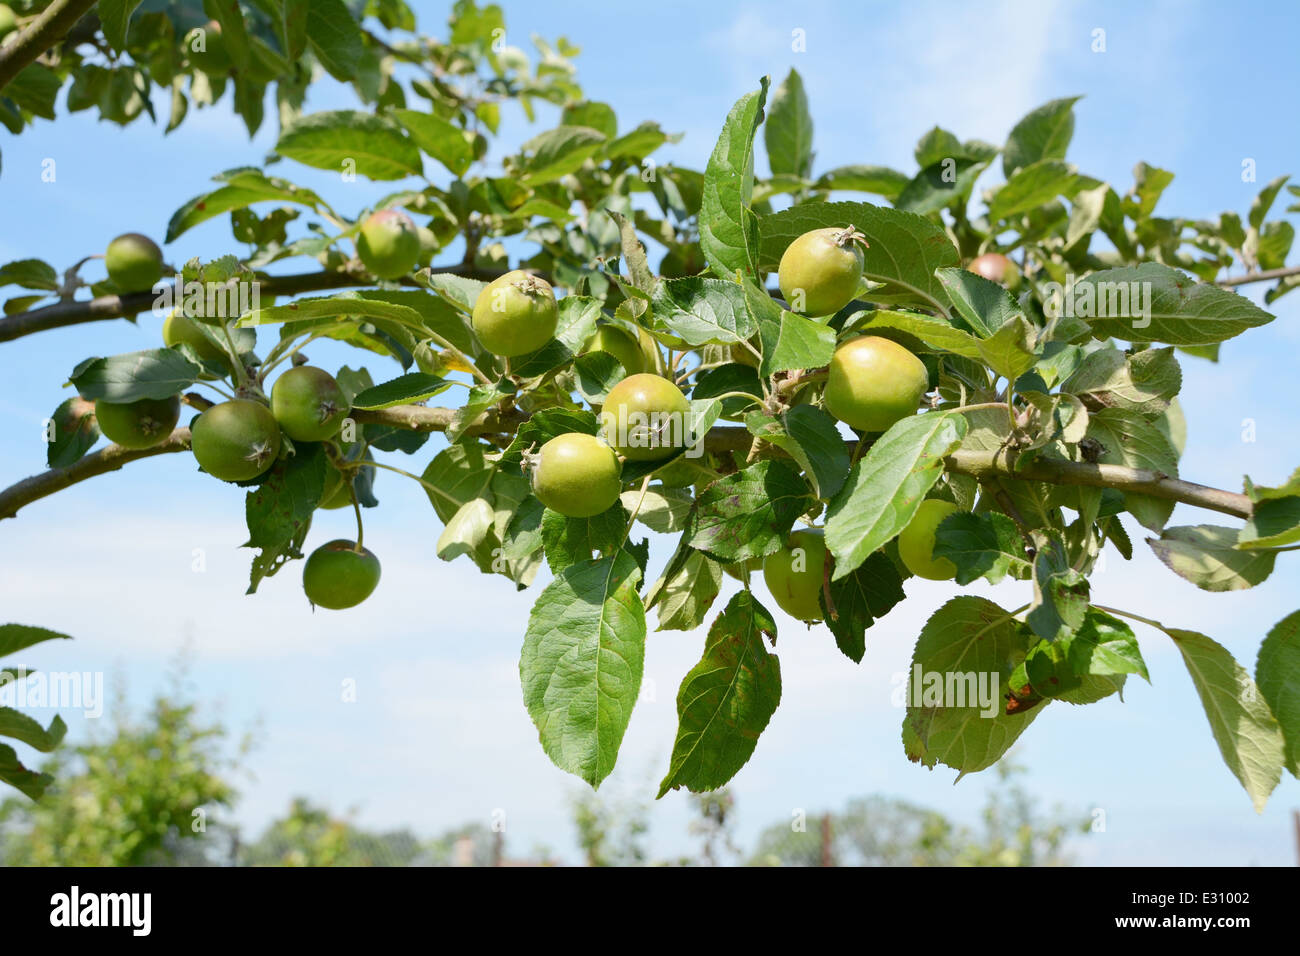 https://c8.alamy.com/comp/E31002/branch-laden-with-small-green-apples-against-a-blue-sky-E31002.jpg